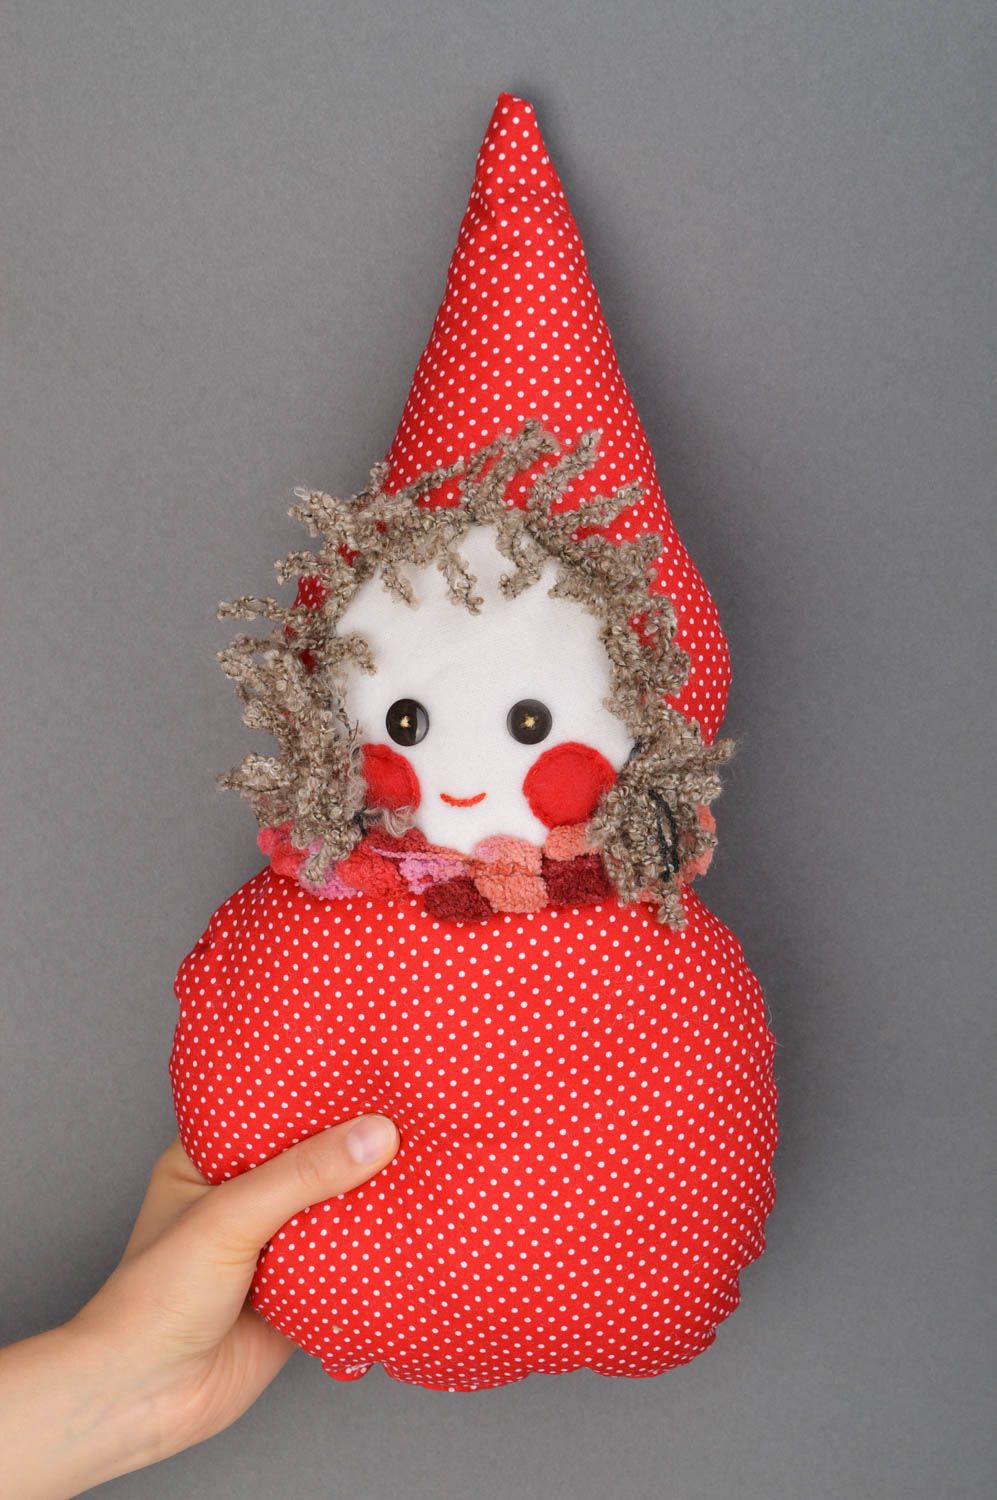 Handmade Stoff Puppe Kinder Spielzeug Geschenkidee für Mädchen originell rot foto 5